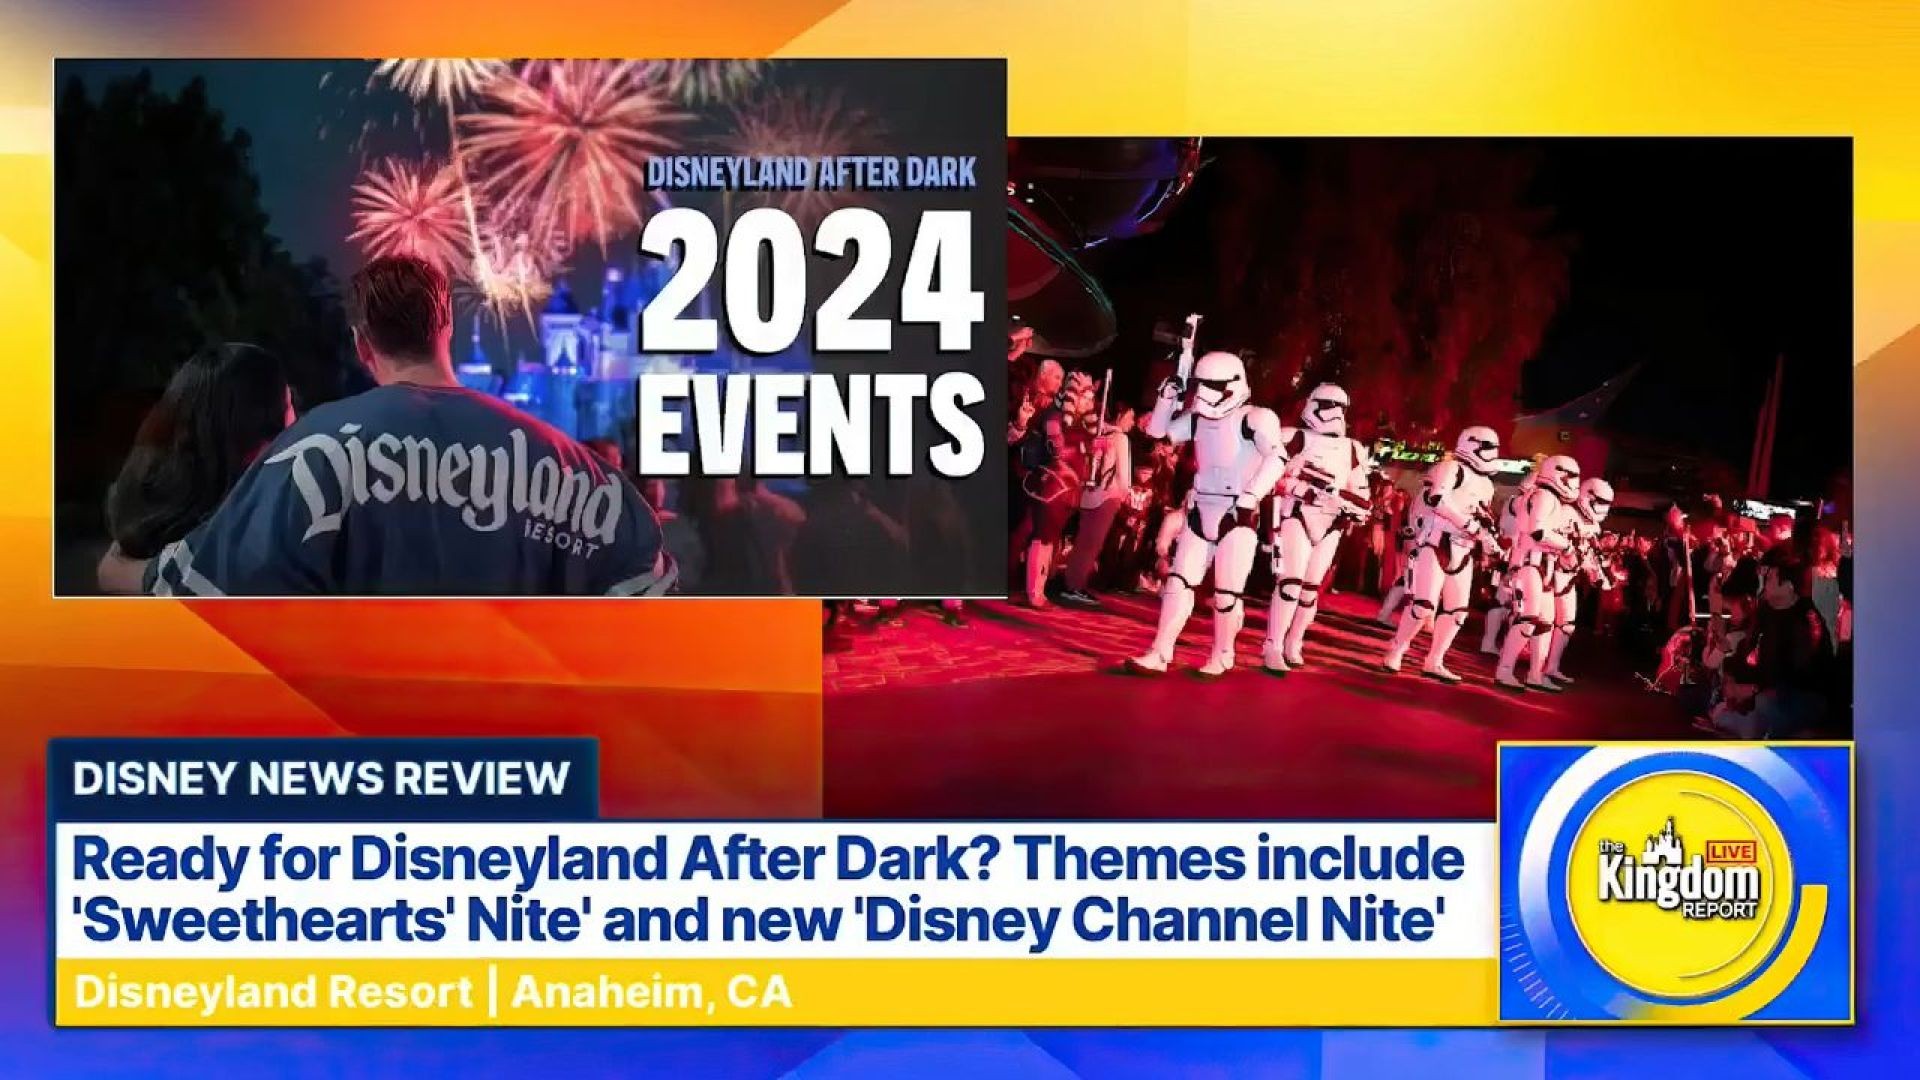 LIST of Disneyland After Dark Events 2024: Disneyland News